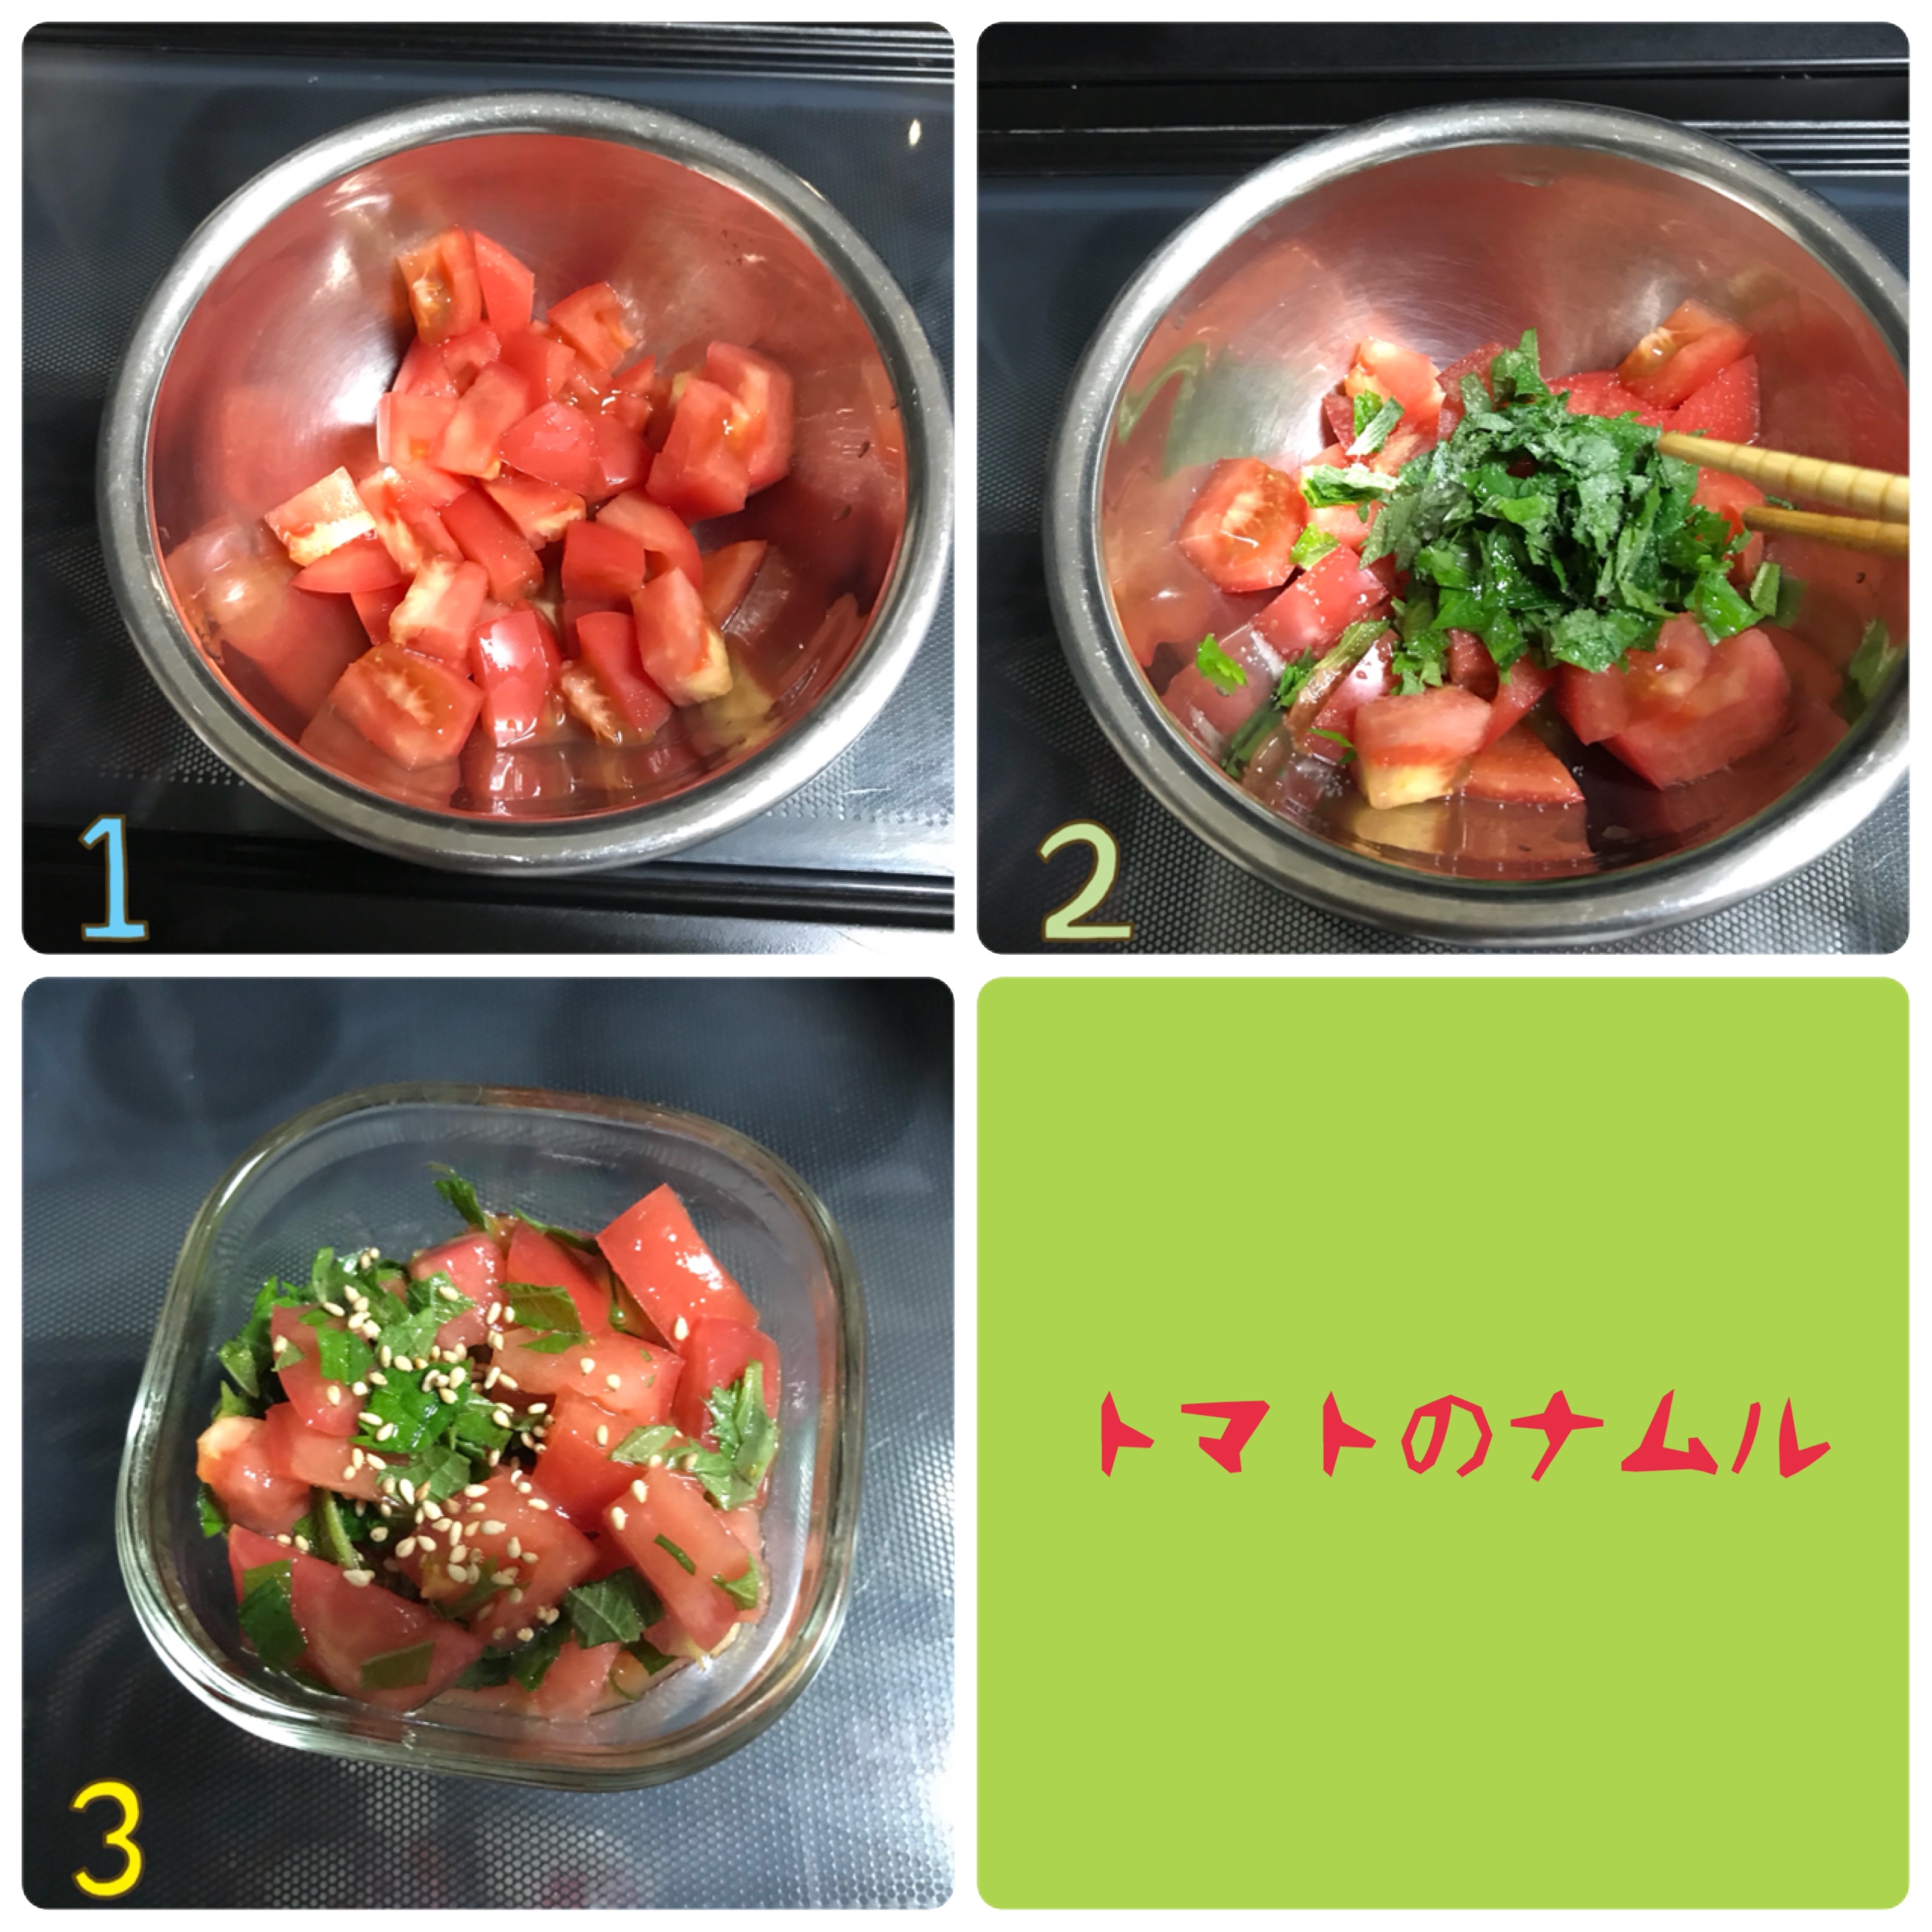 トマトの大葉ナムル トマト嫌いが勧める トマトが食べられたレシピ3選 Mama Kitchen Powered By ライブドアブログ